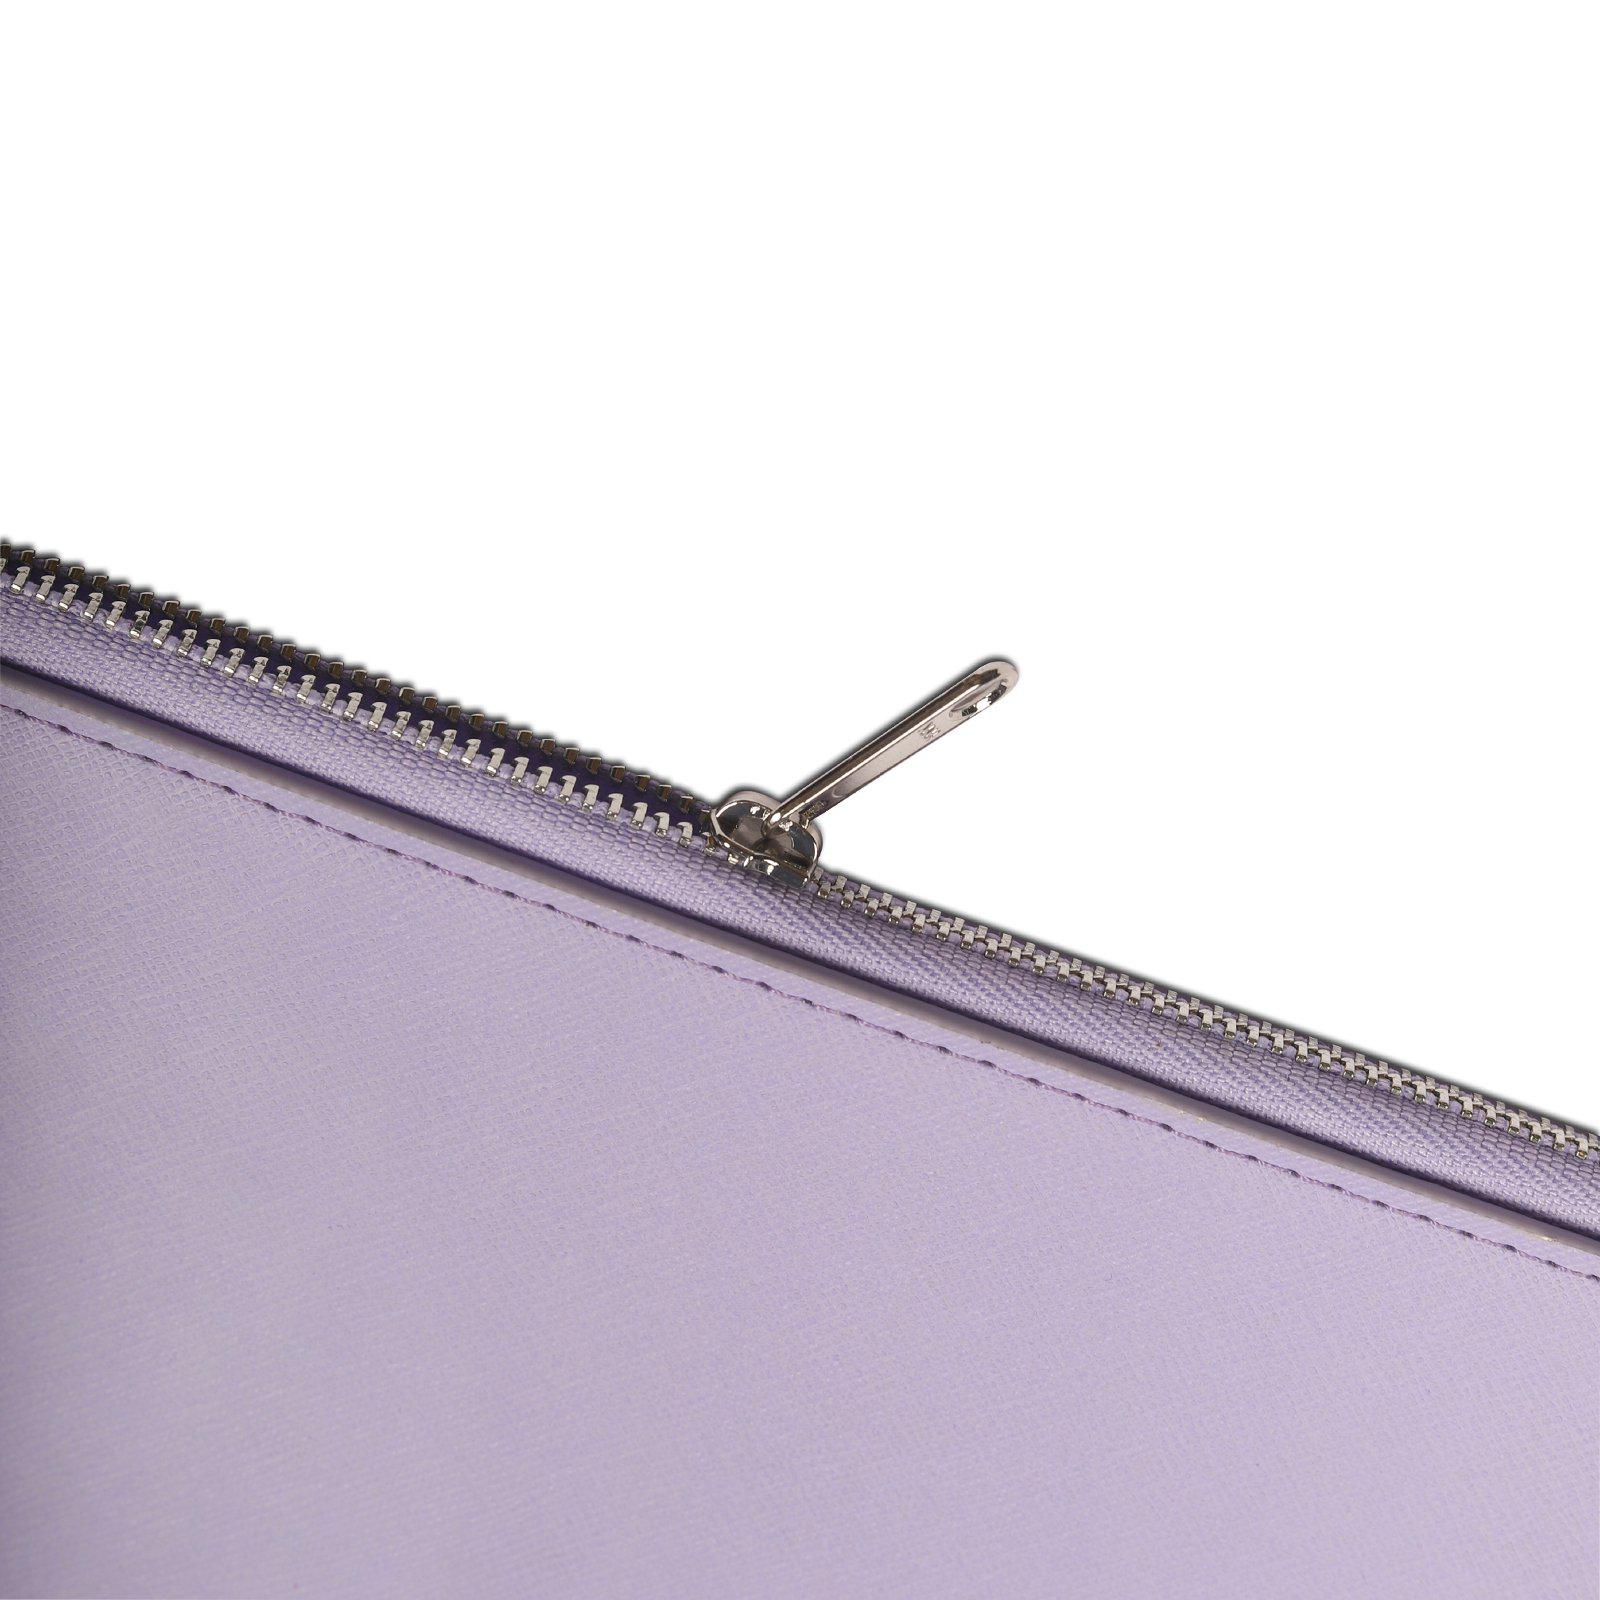 Laptoptasche 16" Lavender